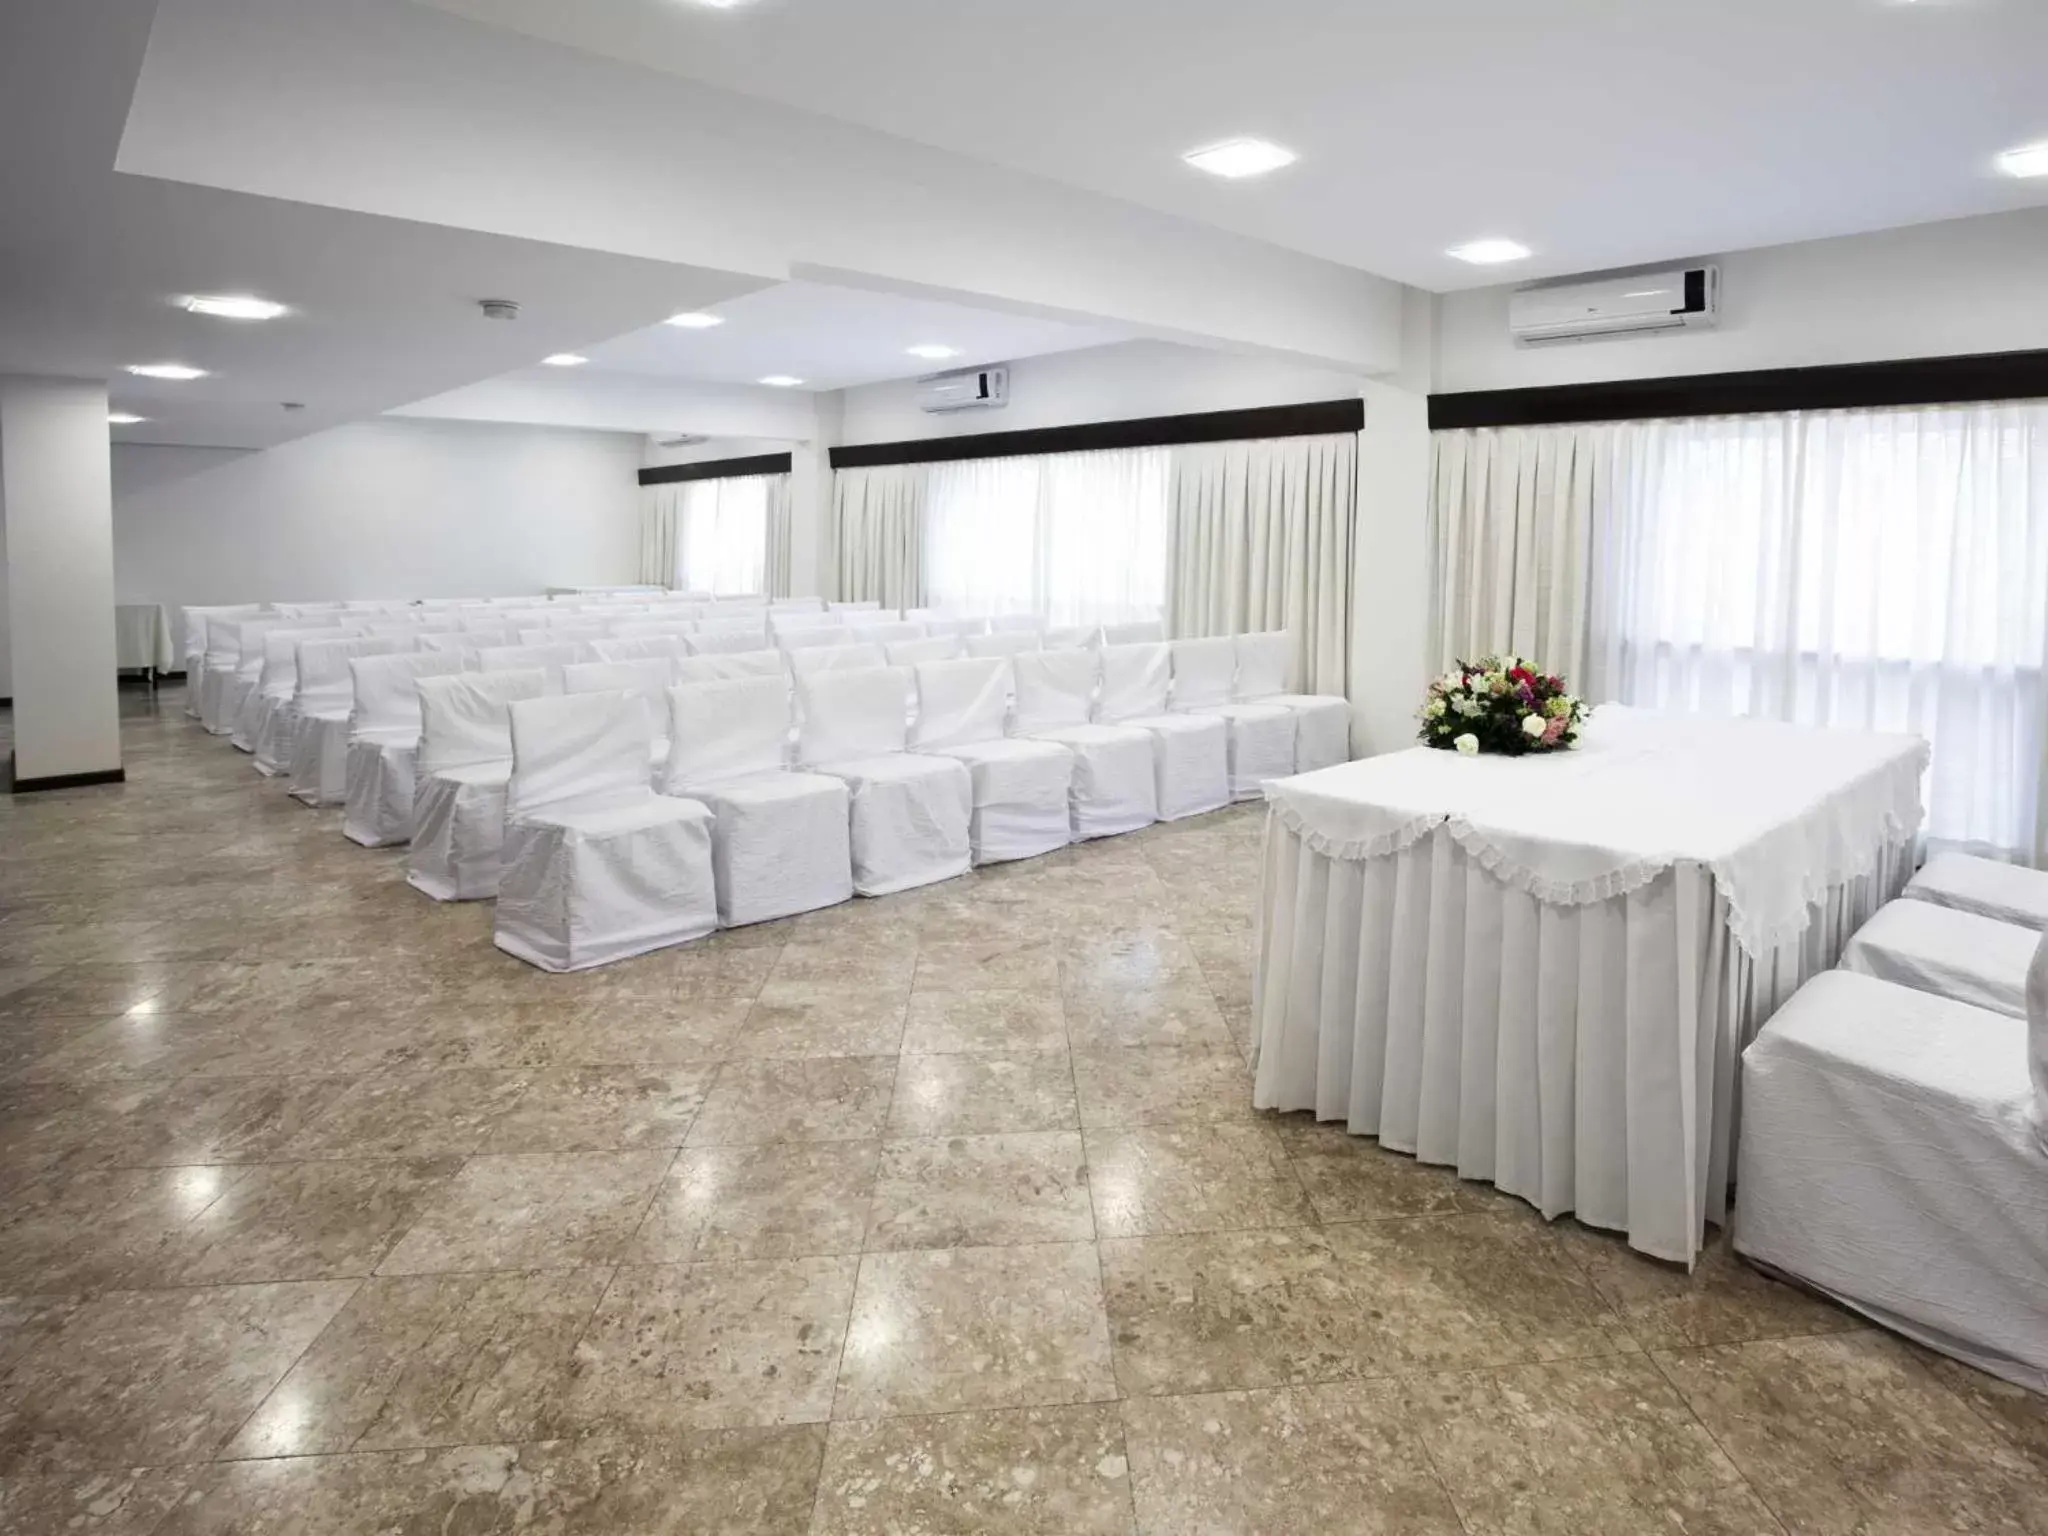 Banquet/Function facilities, Banquet Facilities in Plaza Blumenau Hotel